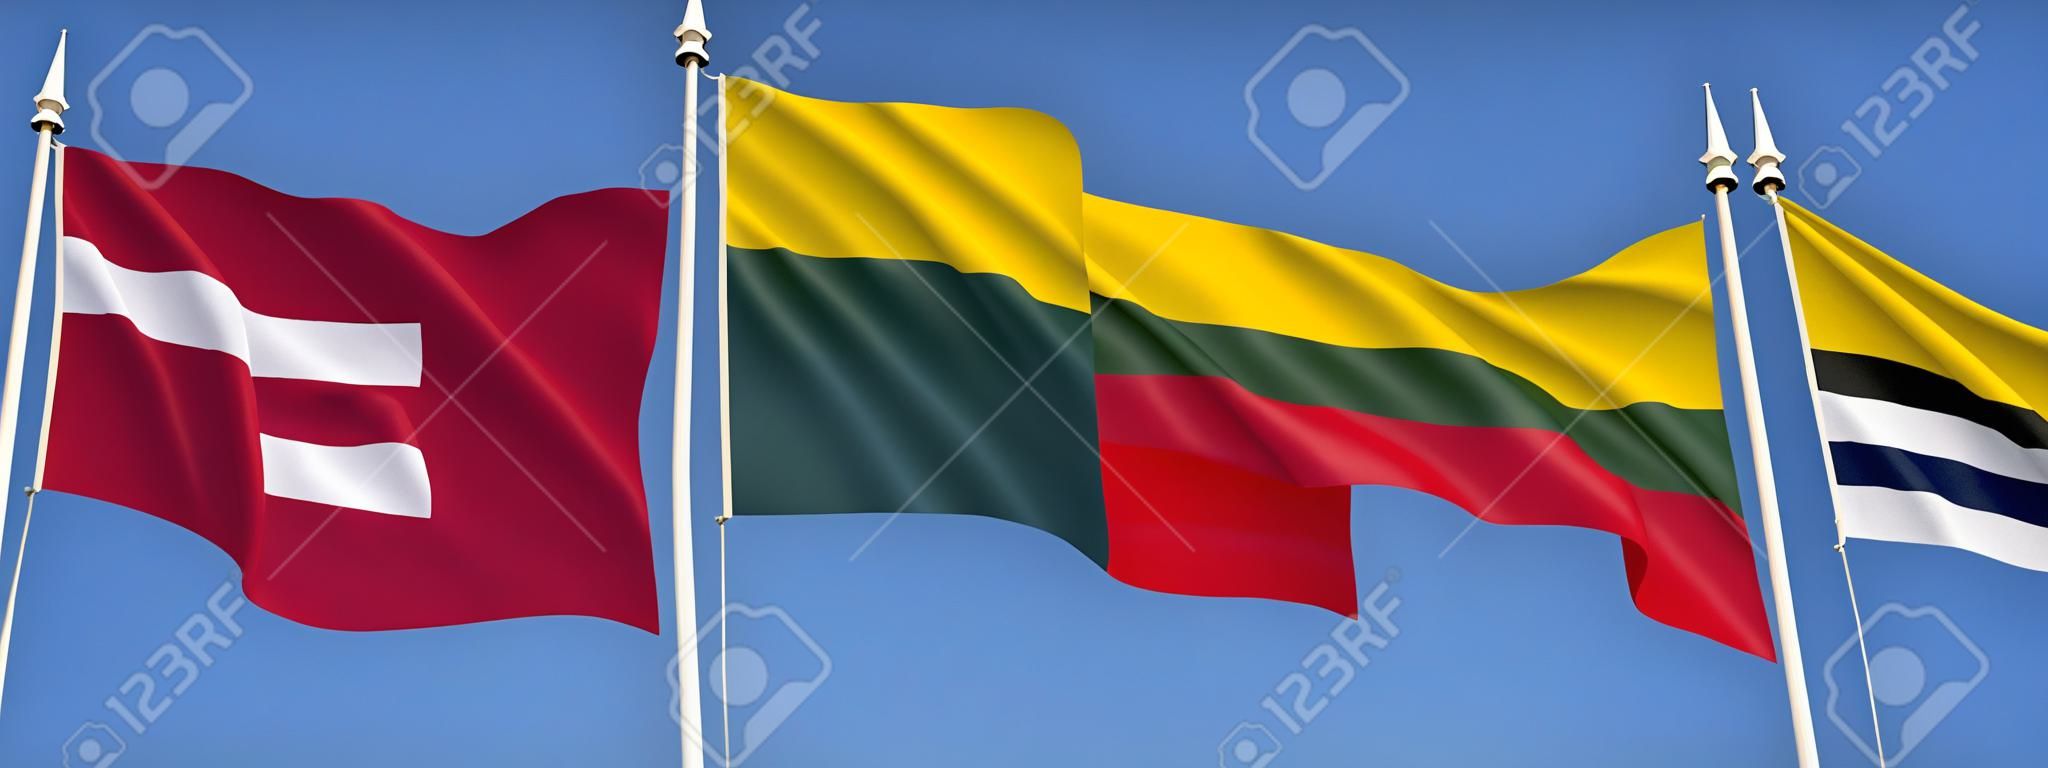 Flaggen der baltischen Staaten - Lettland, Litauen und Estland.